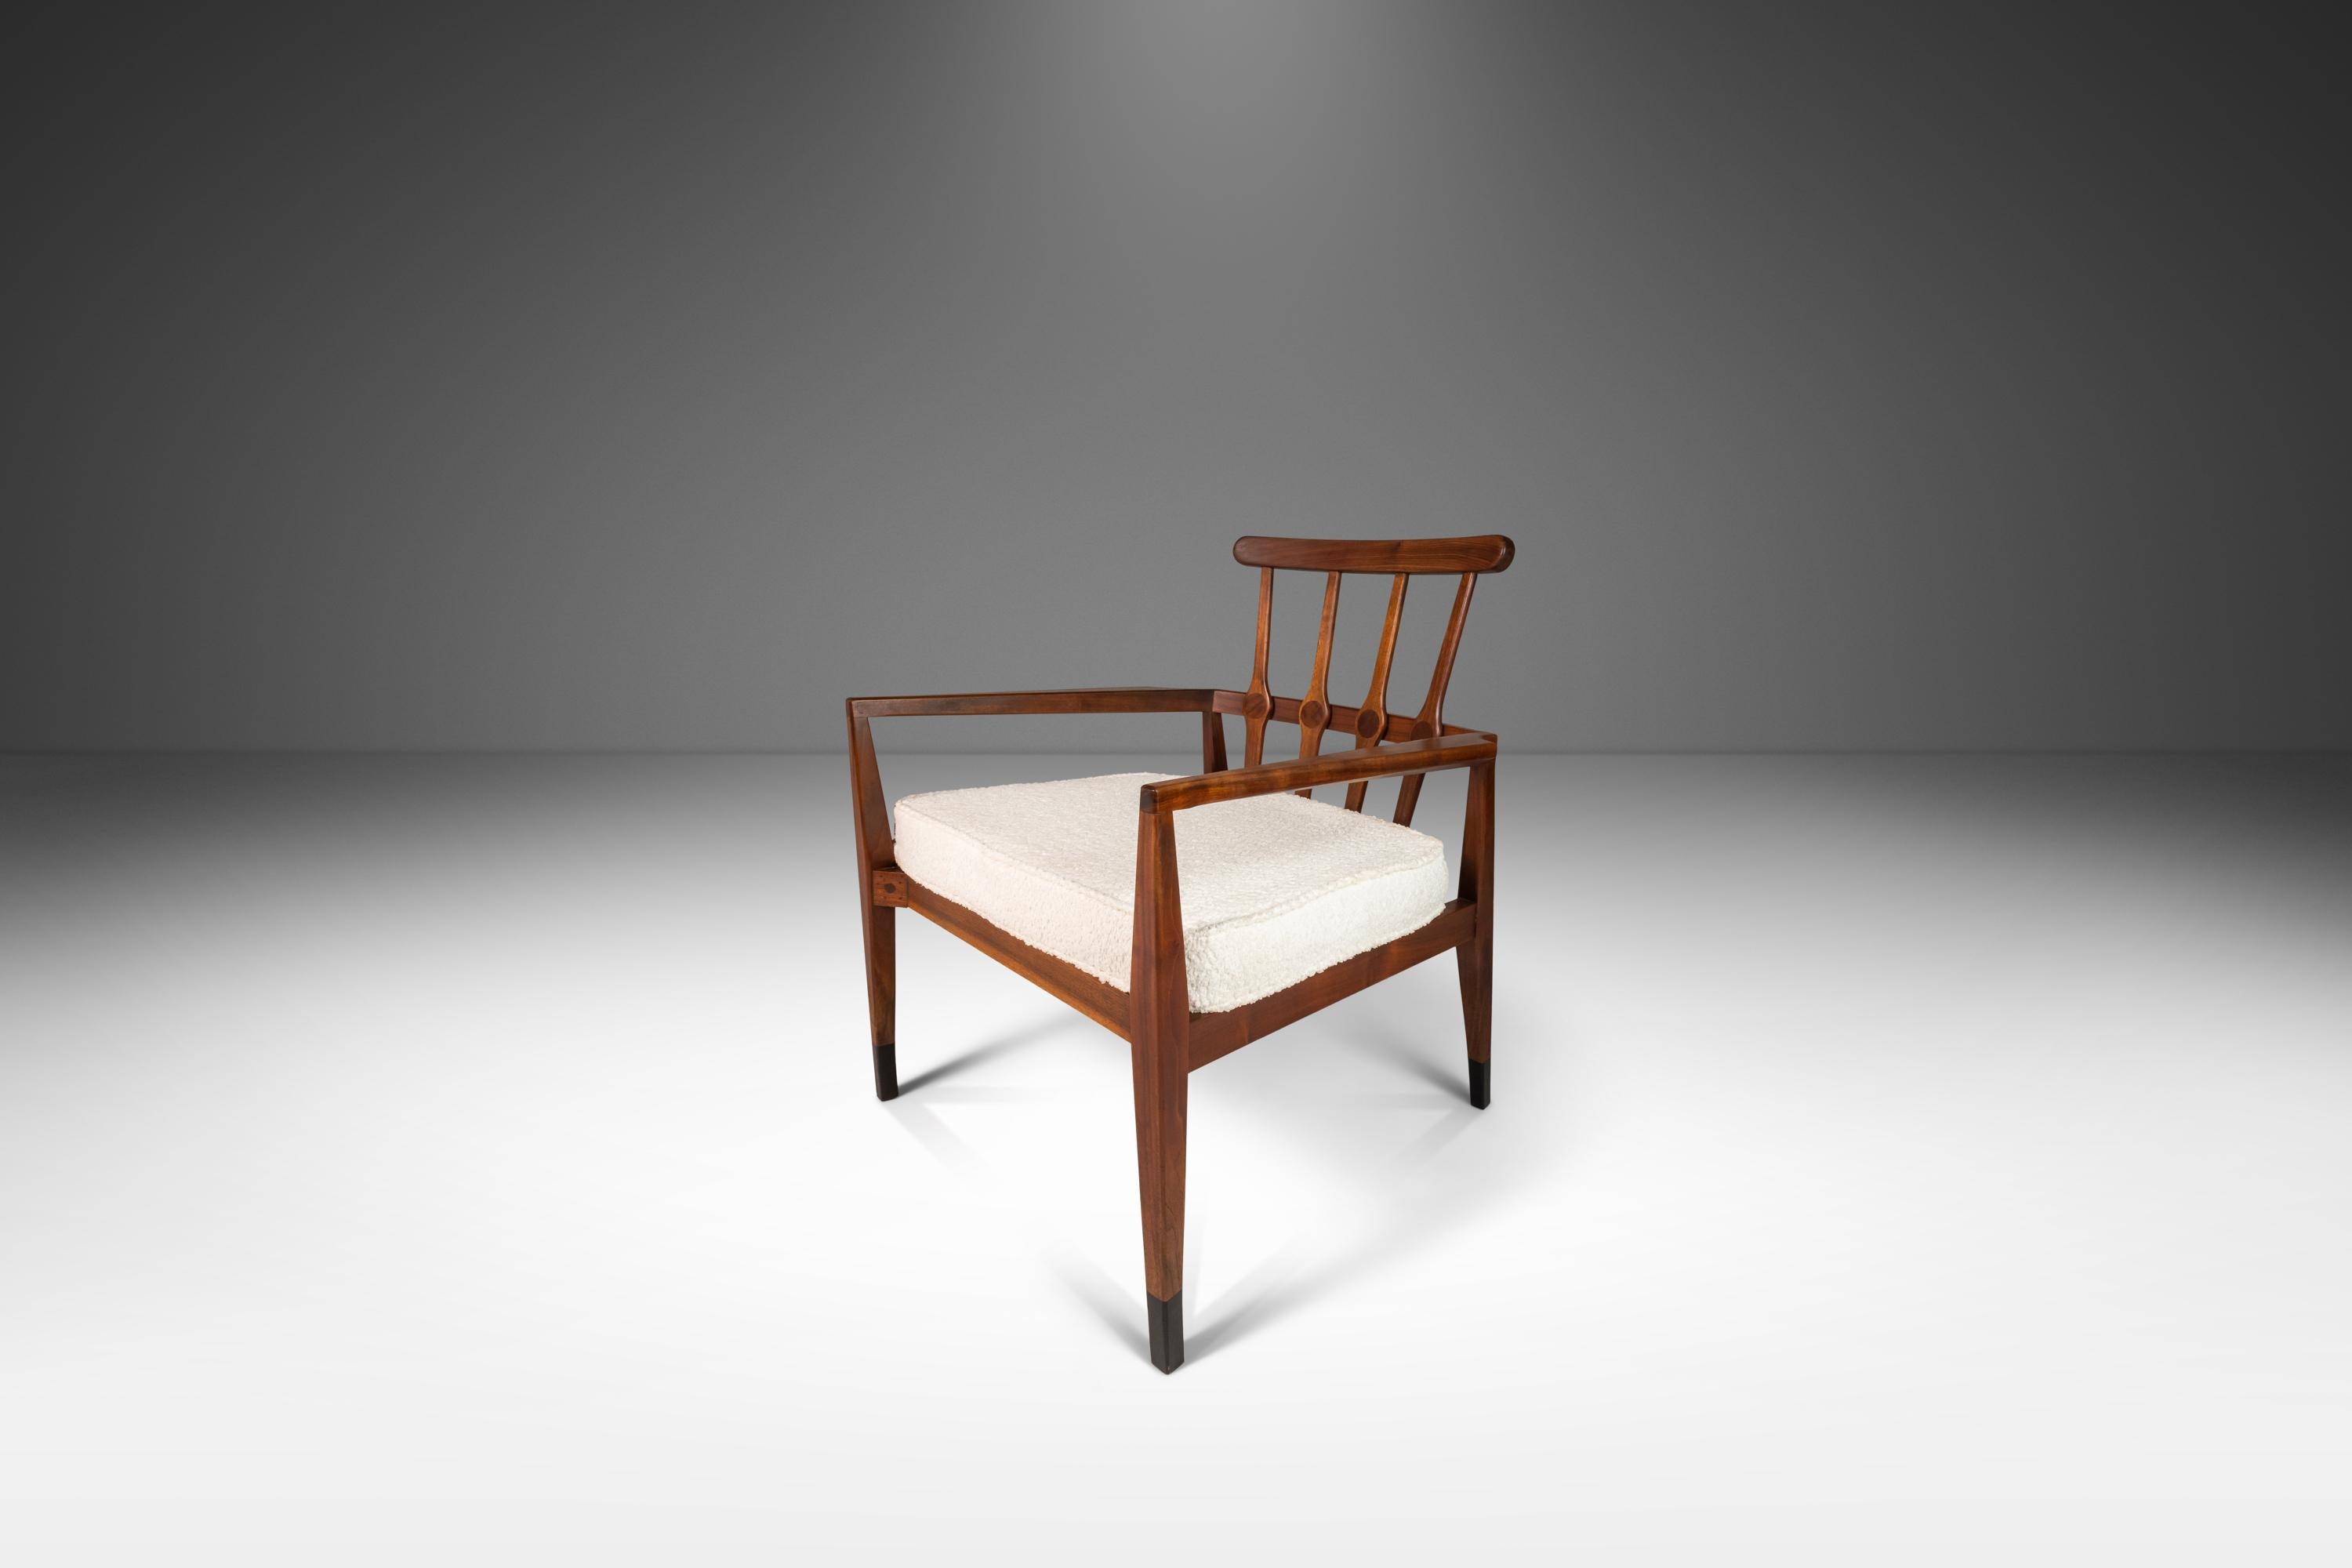 Dieses exquisite Set kantiger Sessel, das Robert Foster JR in den frühen 1960er Jahren für Foster-McDavid entwarf, eine kleine Möbelfirma mit Sitz in Tampa, die zwischen 1950 und 1975 gegründet wurde, ist der Beweis dafür, dass amerikanische